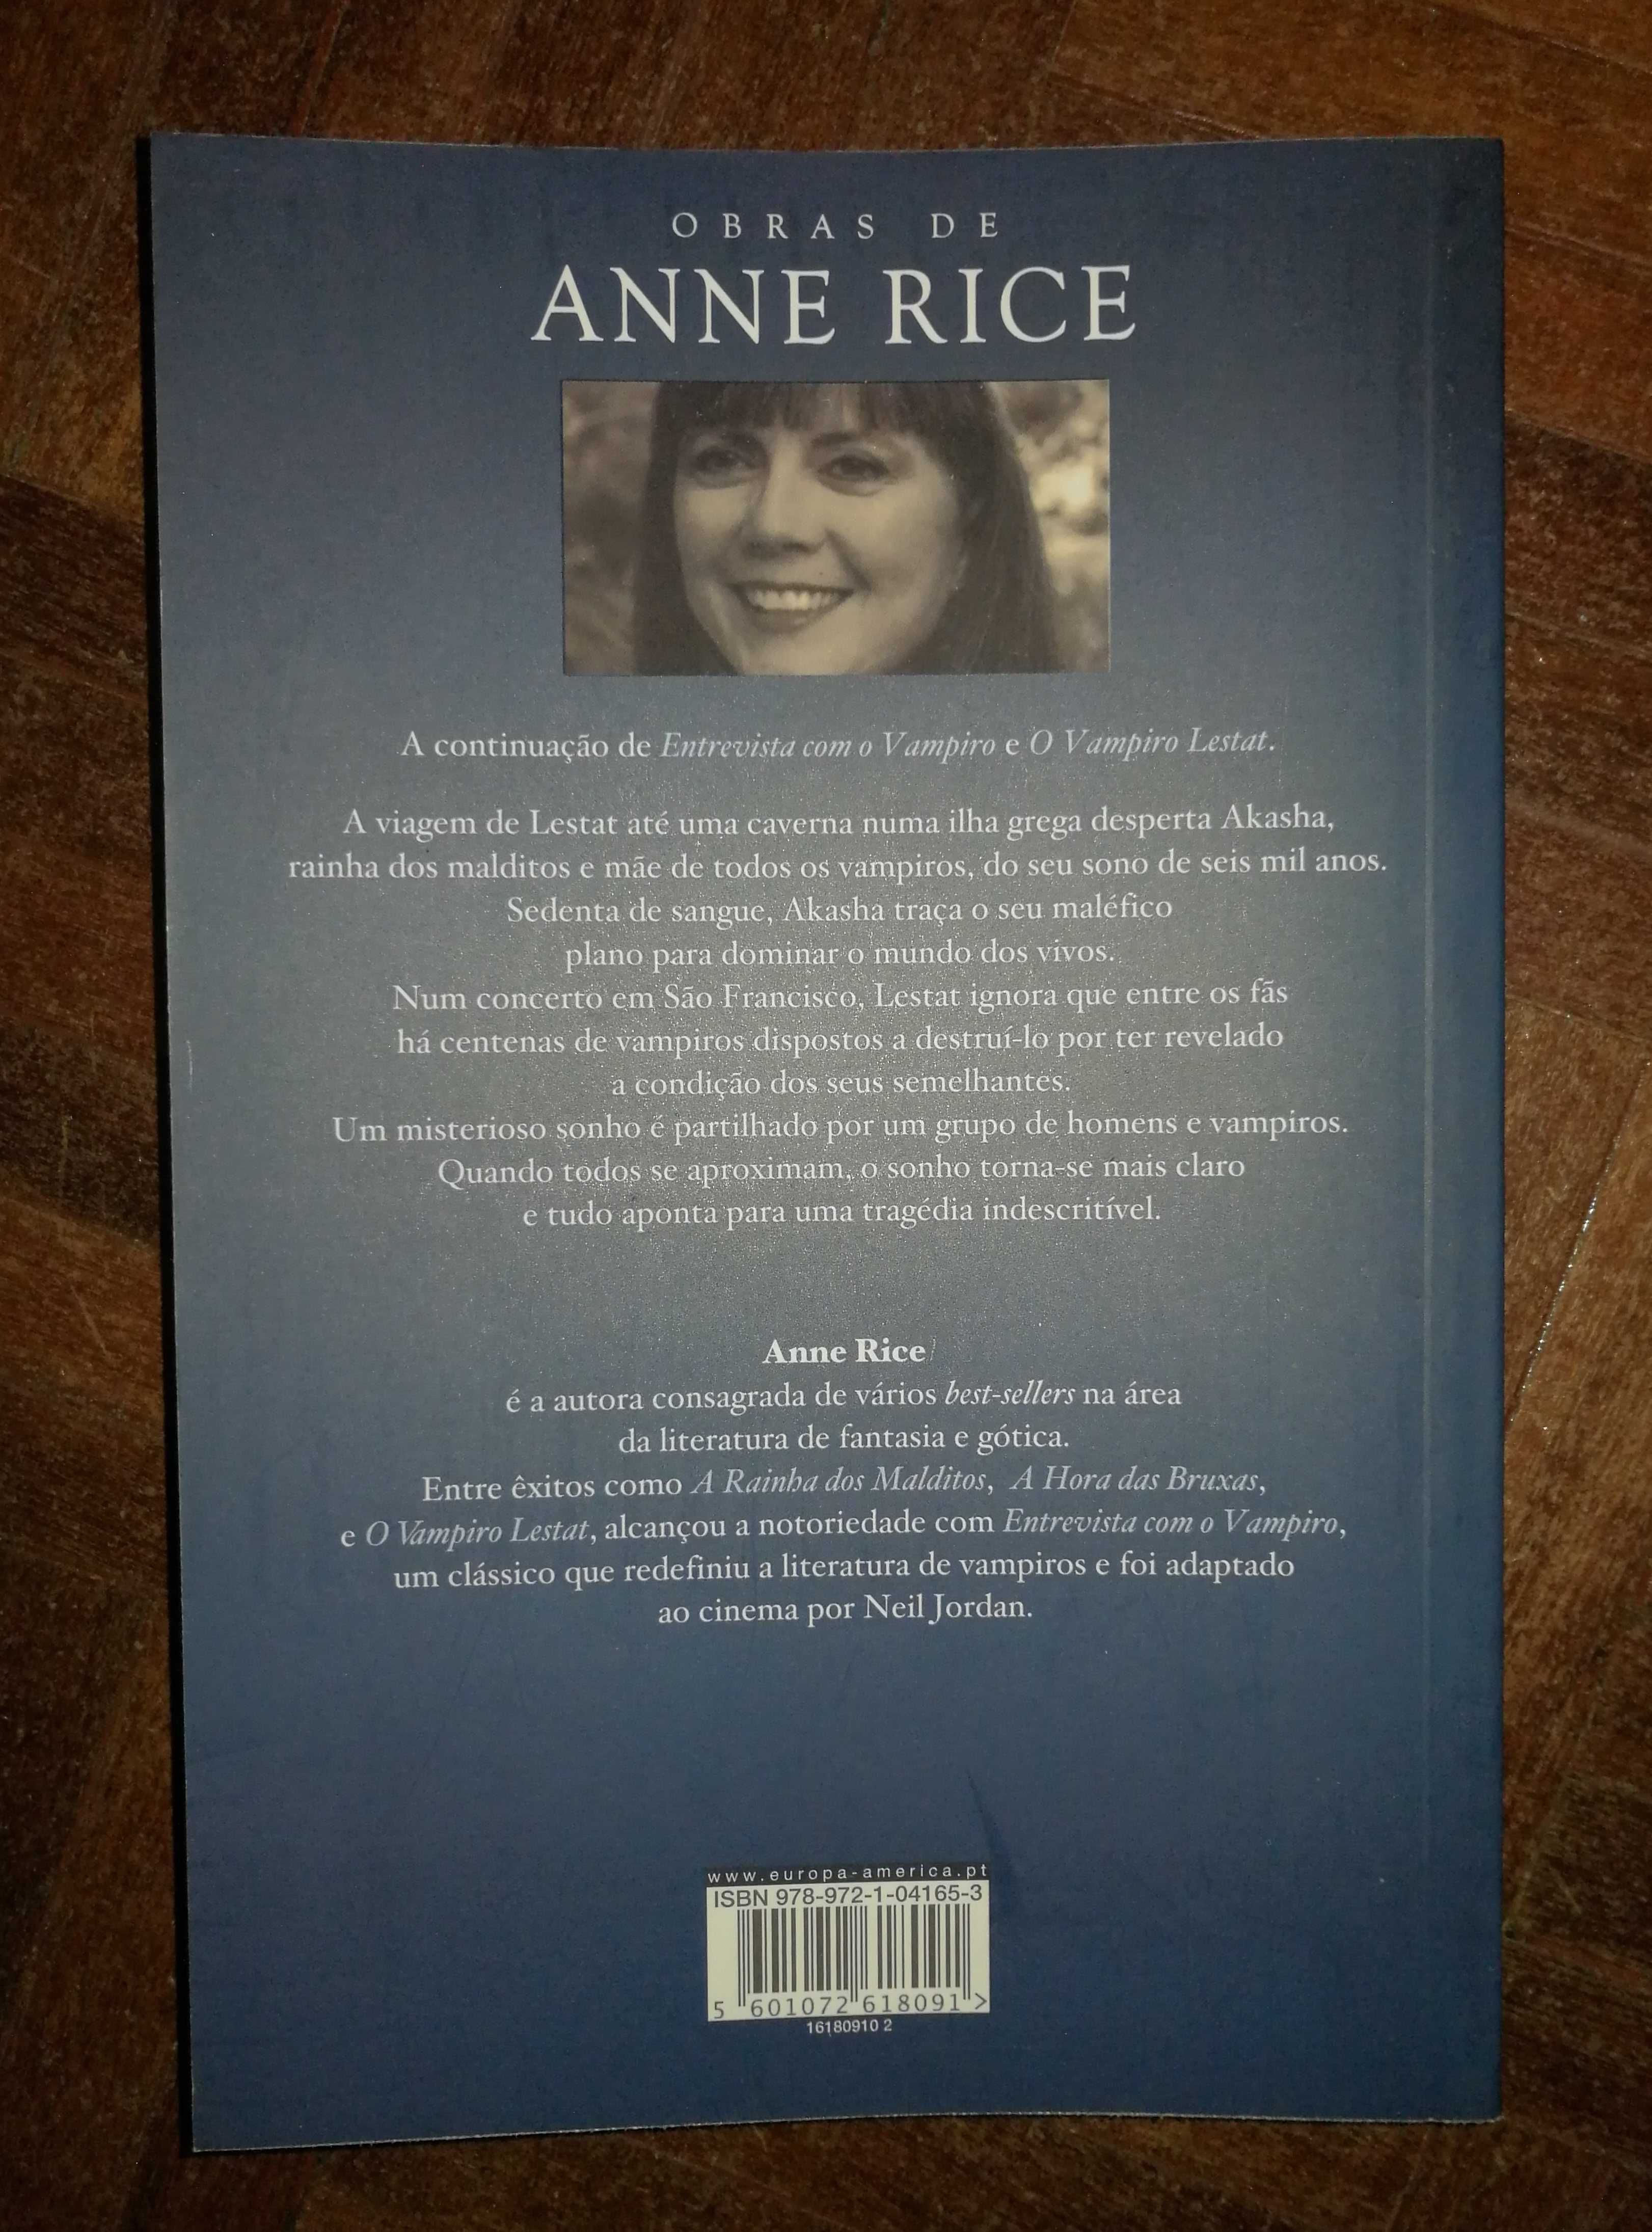 "A Rainha dos Malditos - Volume 1" - Anne Rice